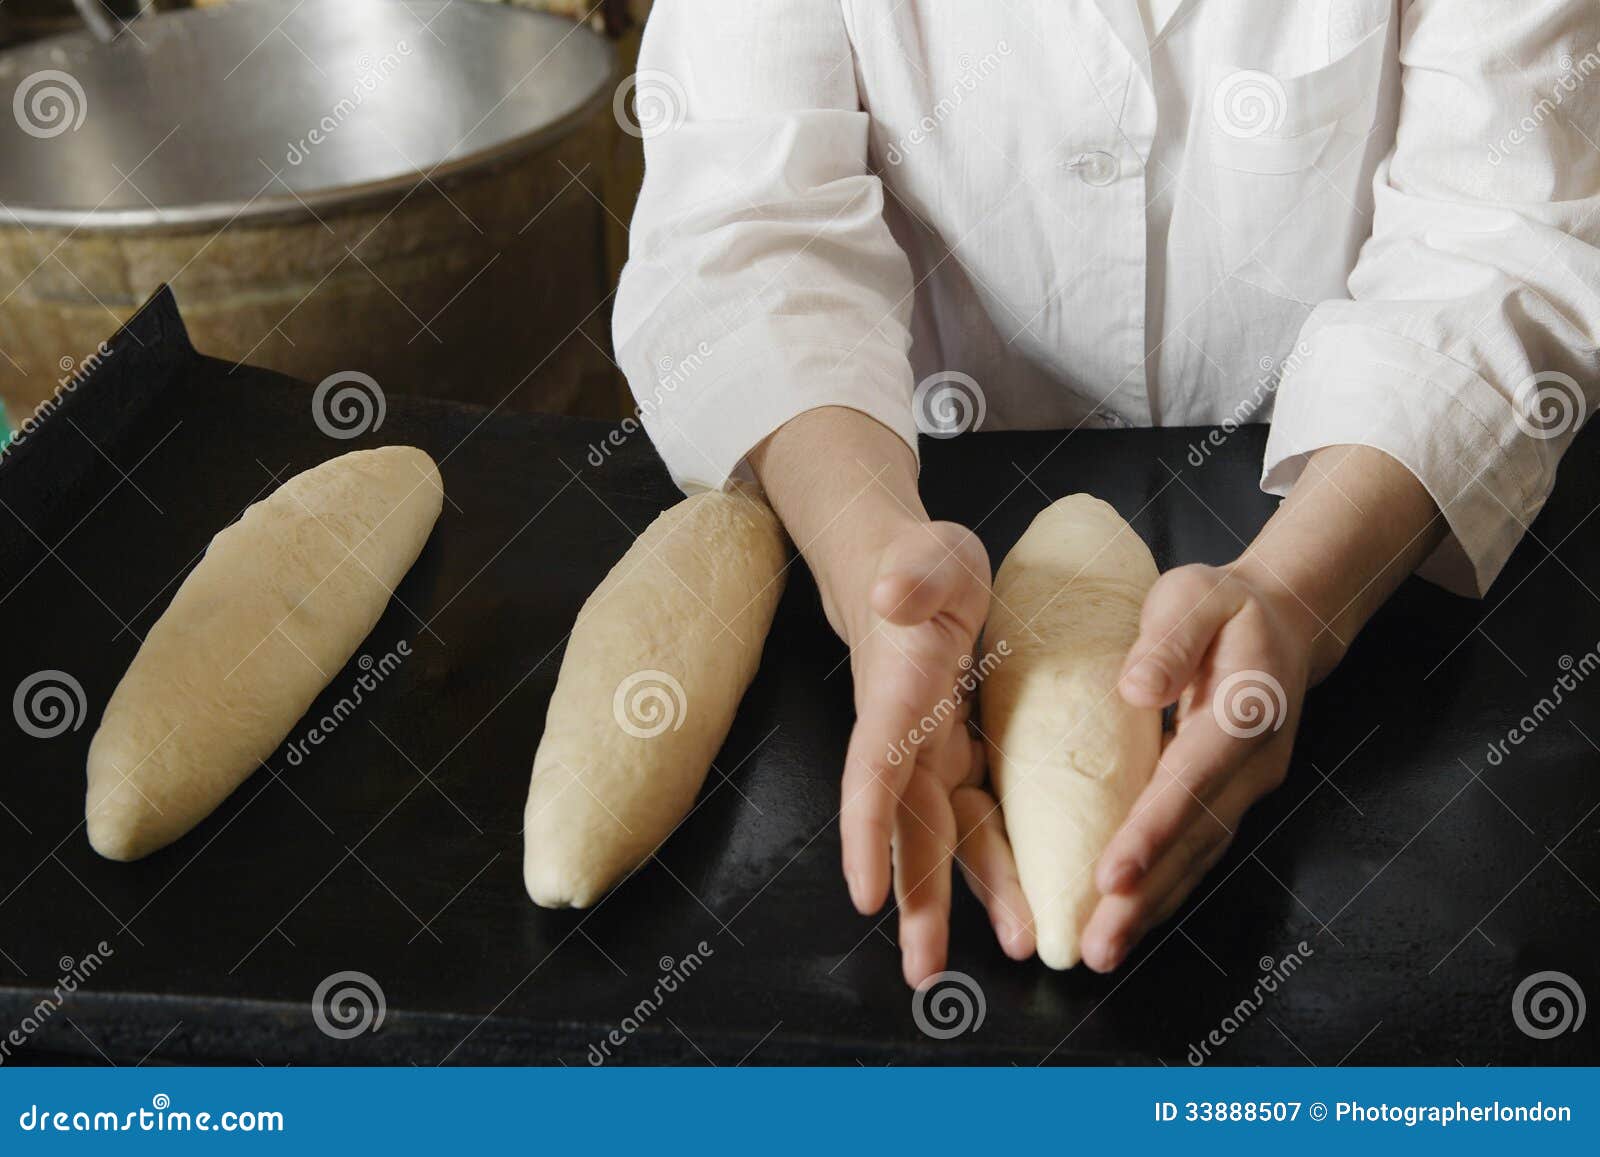 female baker shaping loaves